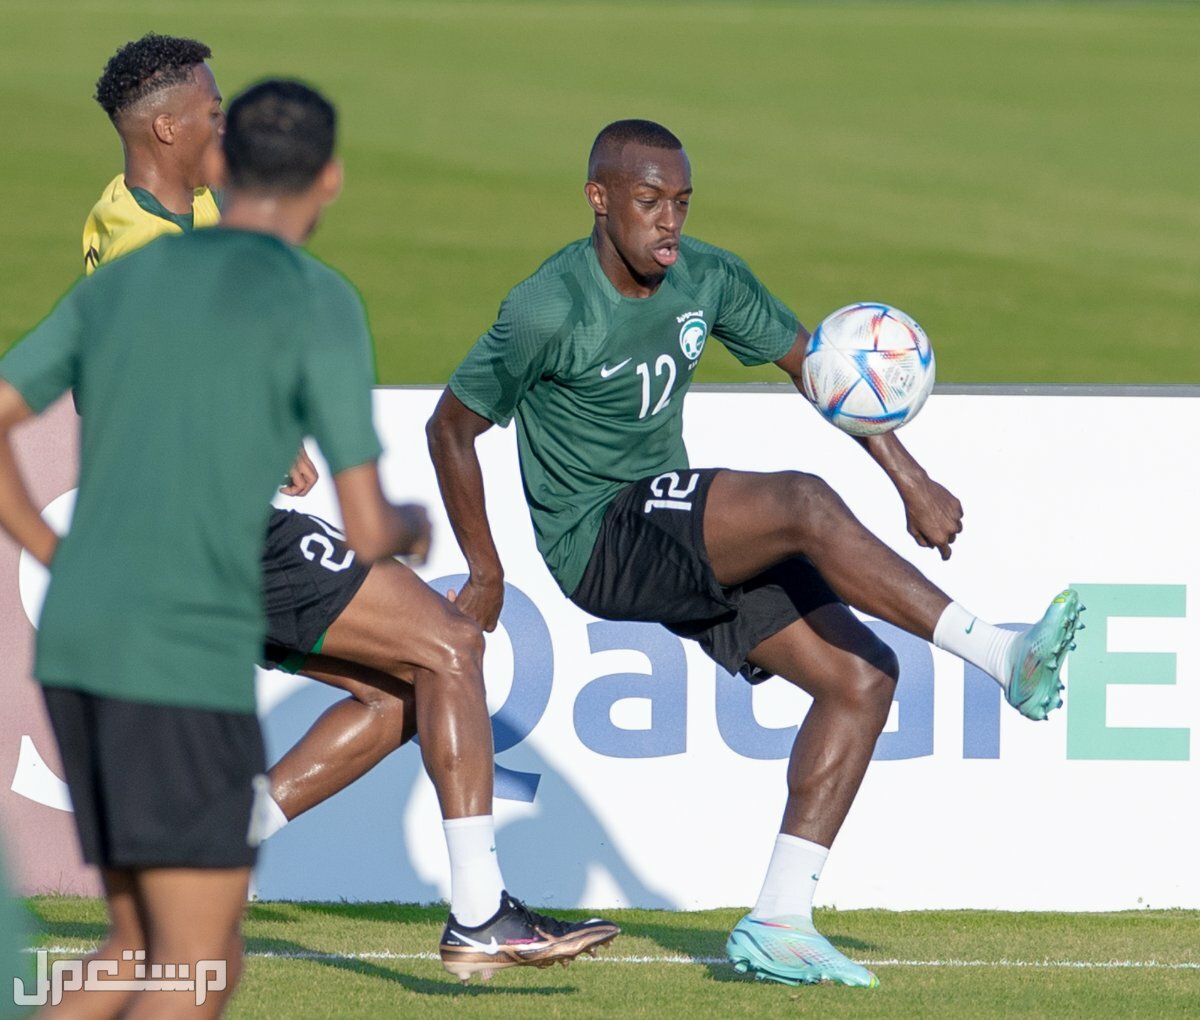 السعودية وبولندا مشاهدة مجانية لمباريات كاس العالم 2022 في لبنان المنتخب السعودي